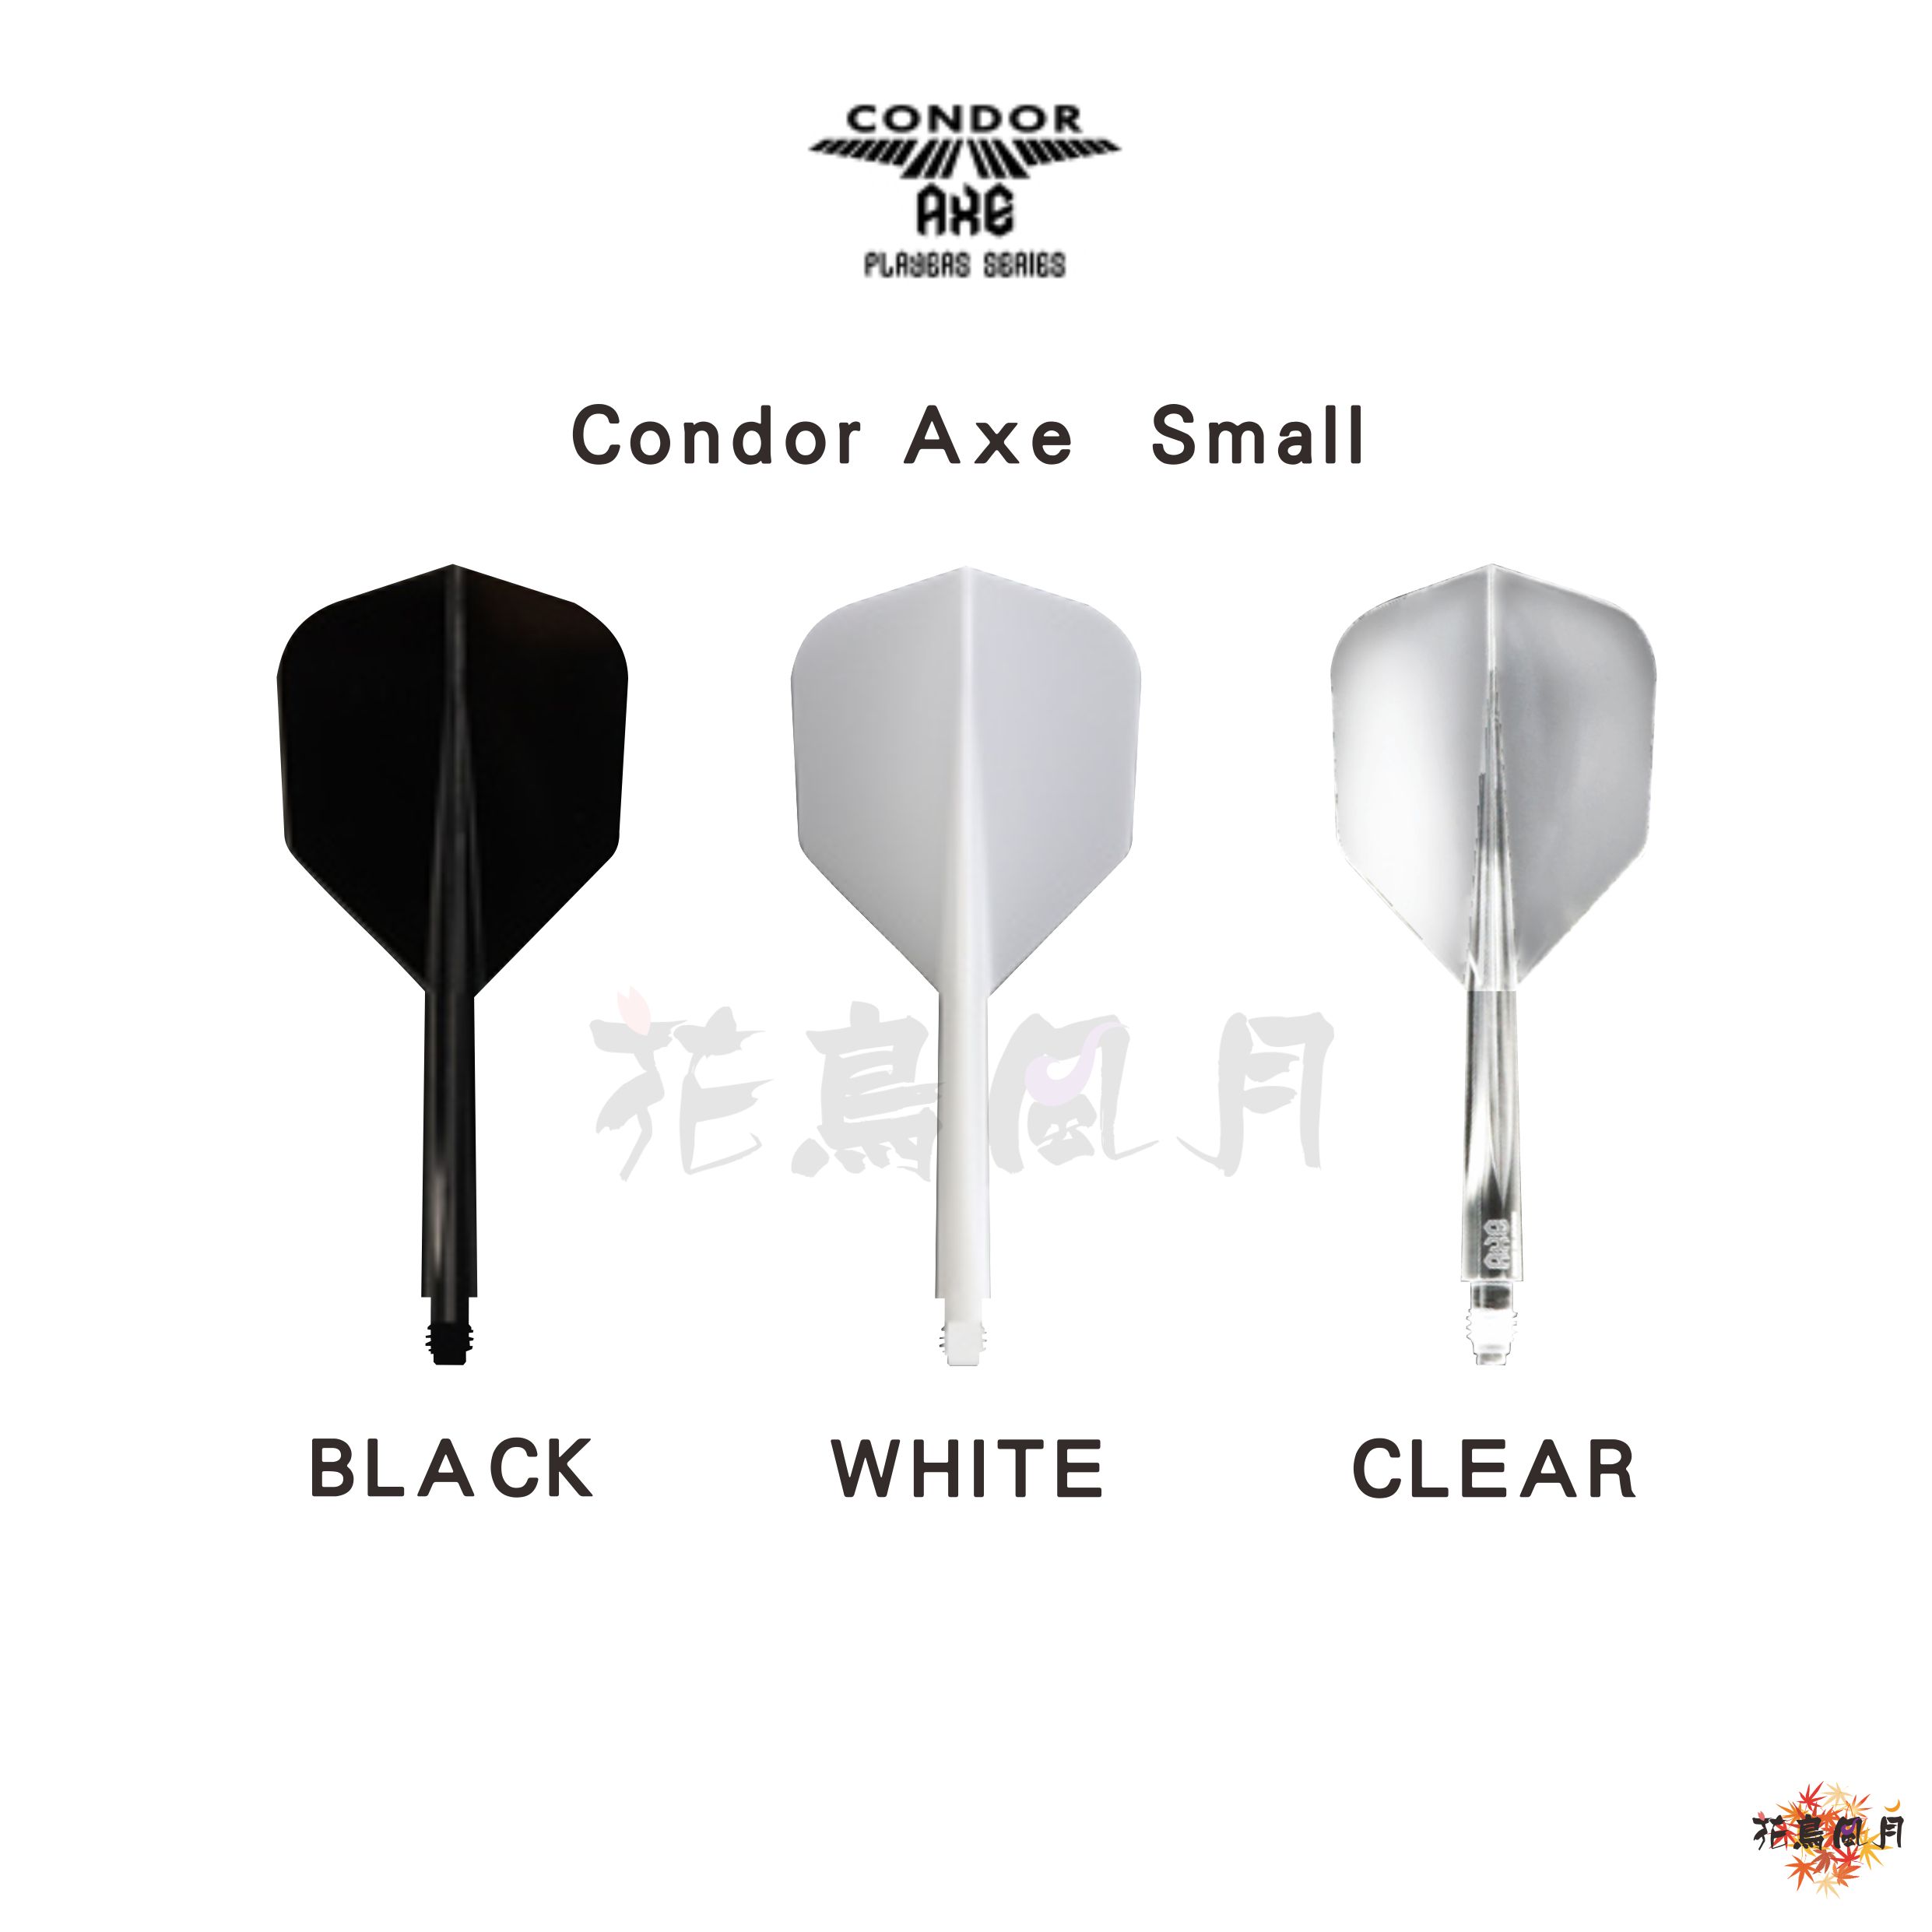 CONDOR-AXE-Small